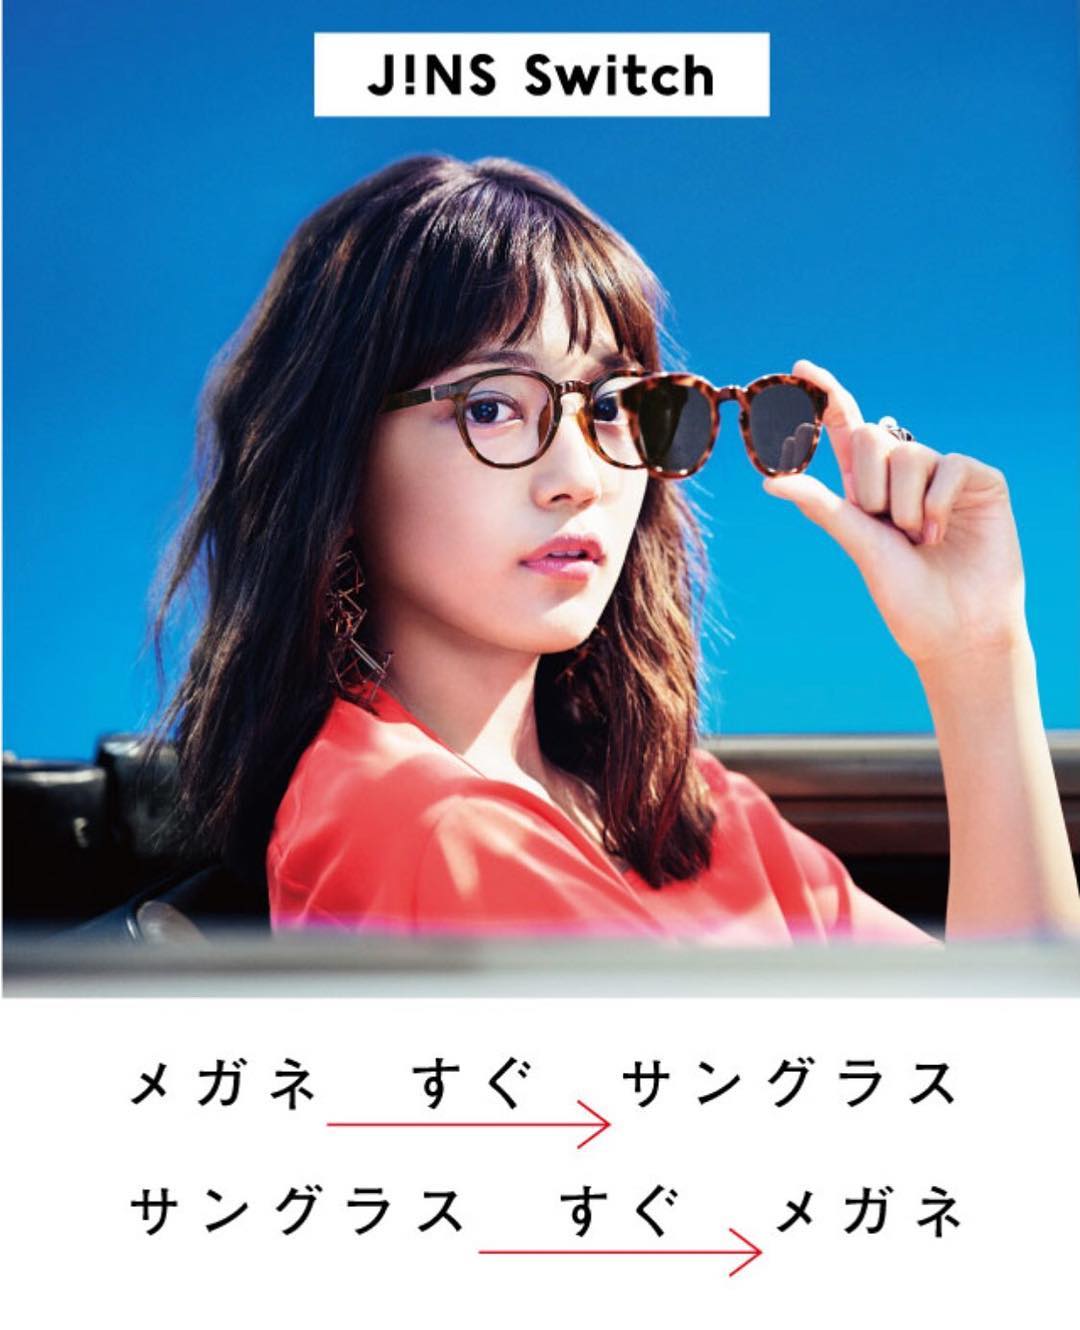 川口春奈 Jins Switchはメガネにもサングラスにもなっちゃうよ 超便利だよね 運転中にはかなり助かる 外出先でも簡単に装着出来るのでたくさん活用して頂ければと思い Wacoca Japan People Life Style